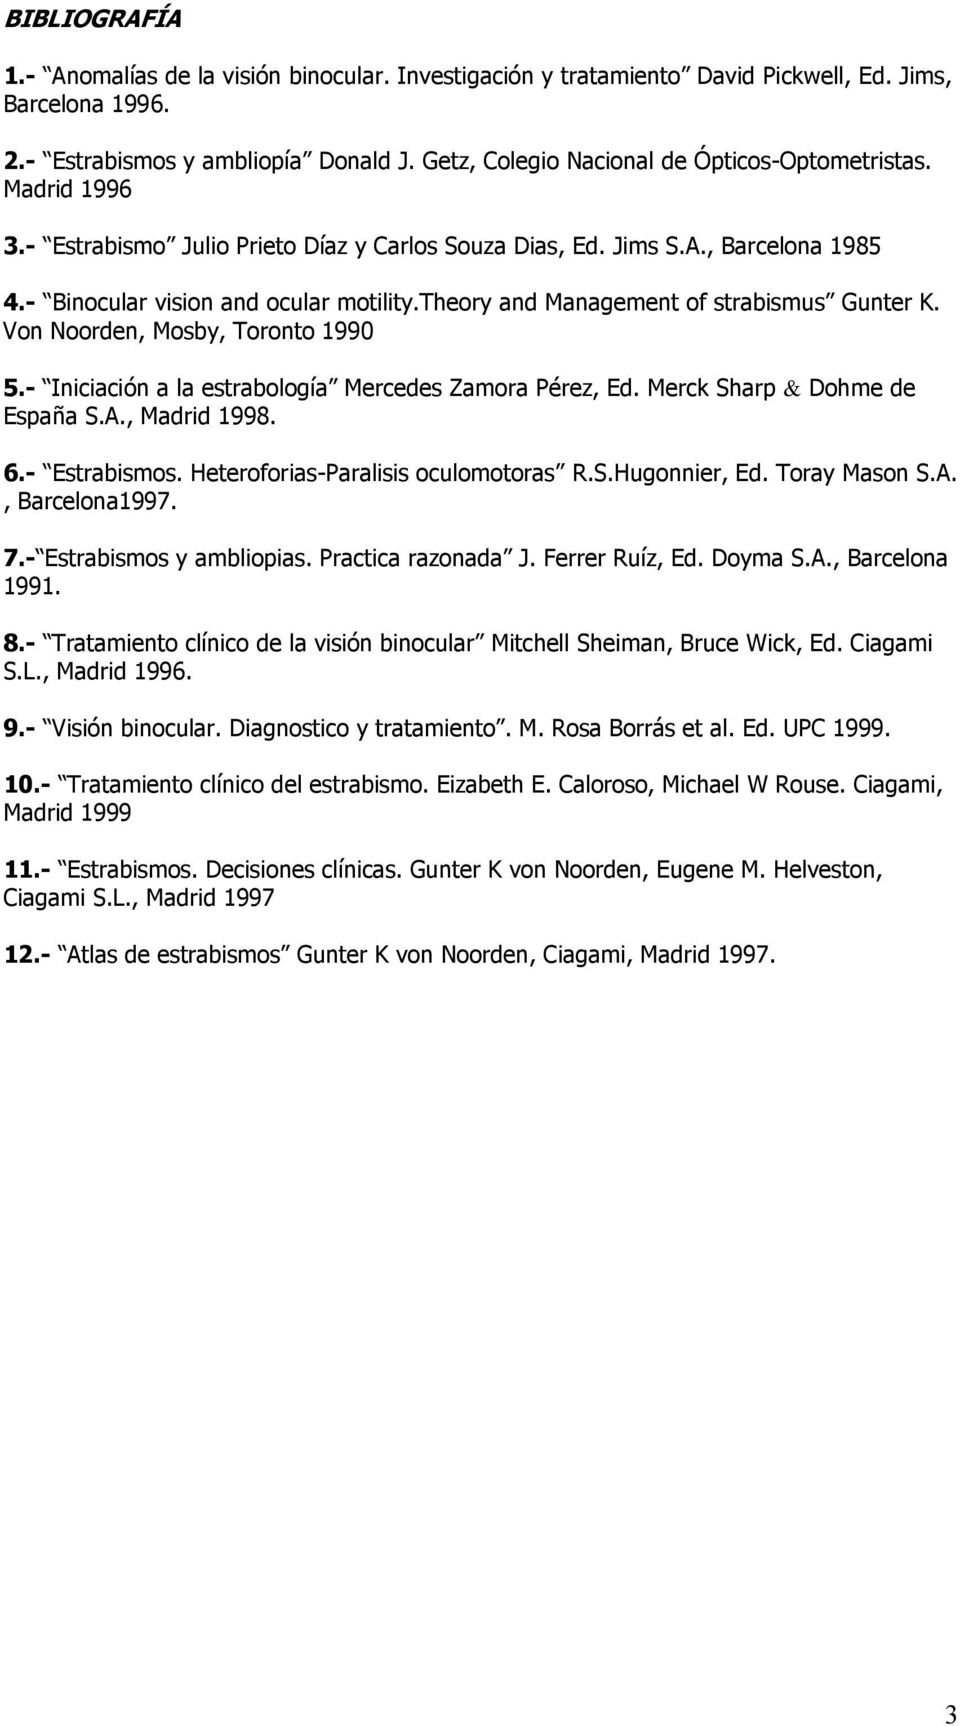 theory and Management of strabismus Gunter K. Von Noorden, Mosby, Toronto 1990 5.- Iniciación a la estrabología Mercedes Zamora Pérez, Ed. Merck Sharp & Dohme de España S.A., Madrid 1998. 6.